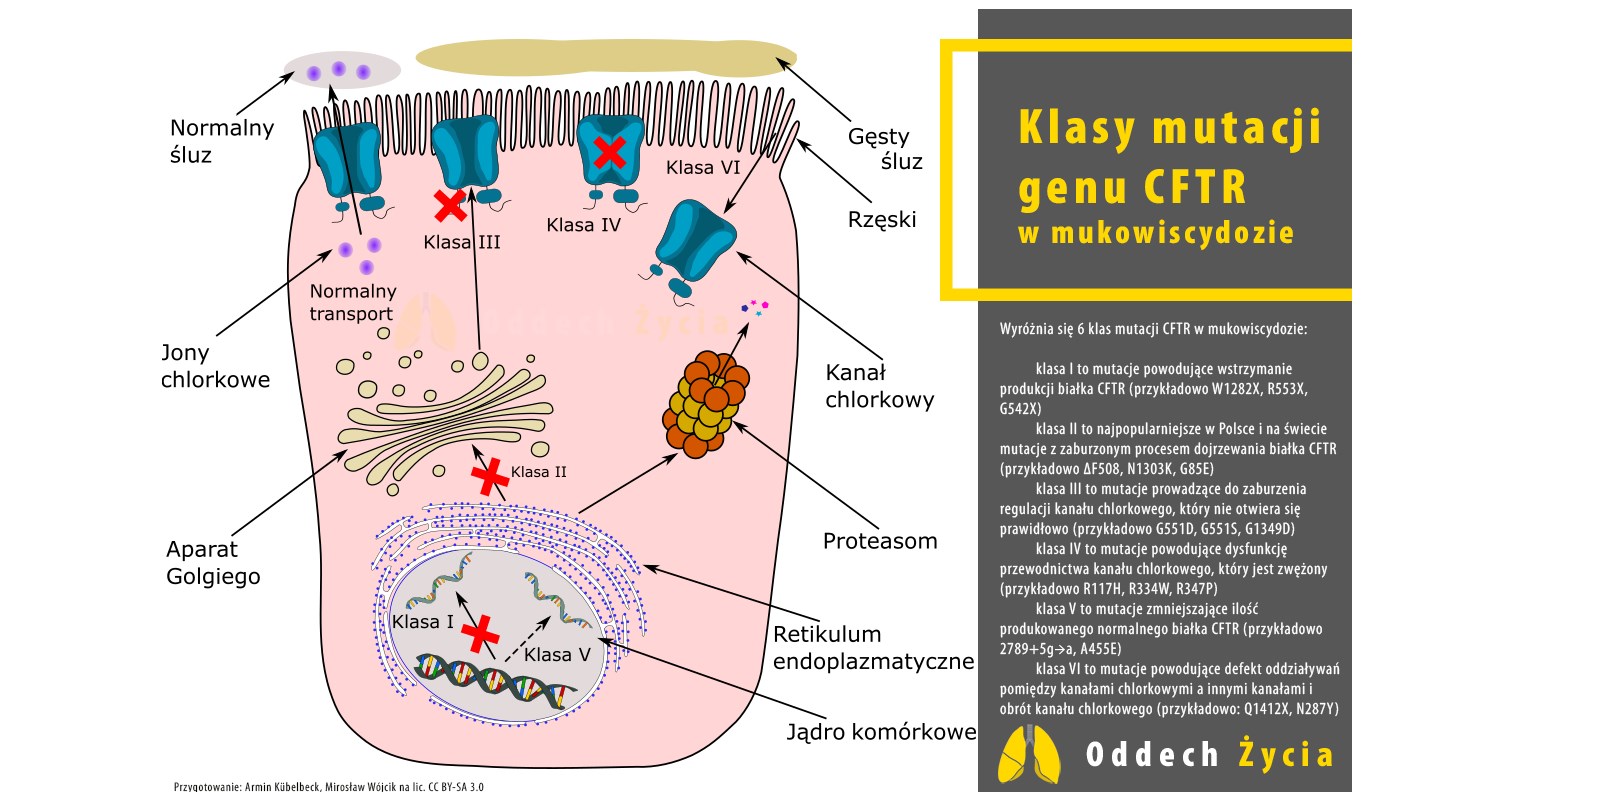 klasy mutacji CFTR w mukowiscydozie